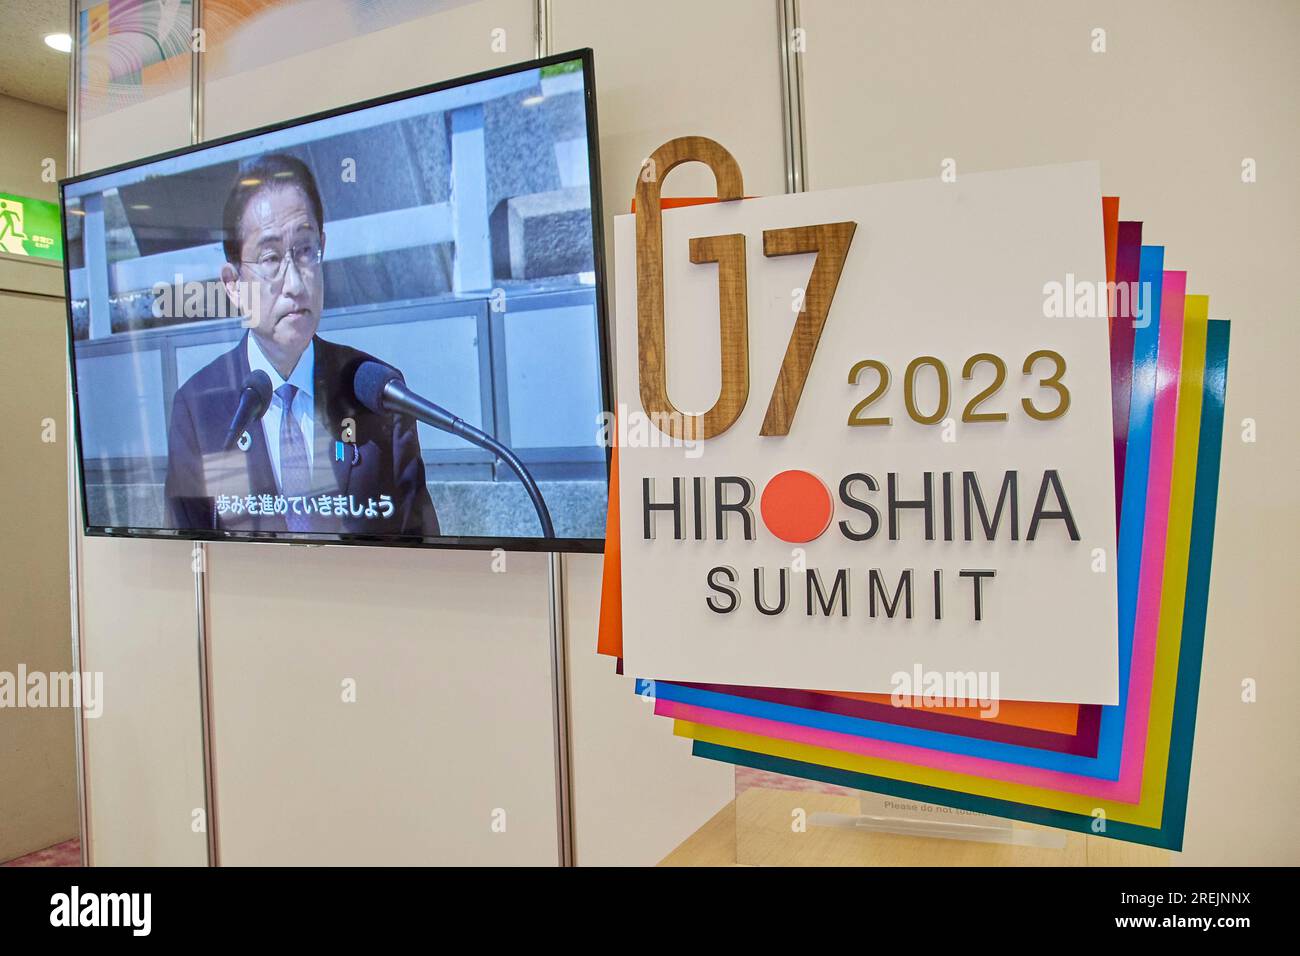 27 juillet 2023, Hiroshima, Japon : un écran affiche une vidéo de la  réunion des dirigeants du G7 à côté du logo lors d'une exposition spéciale  au Musée commémoratif de la paix